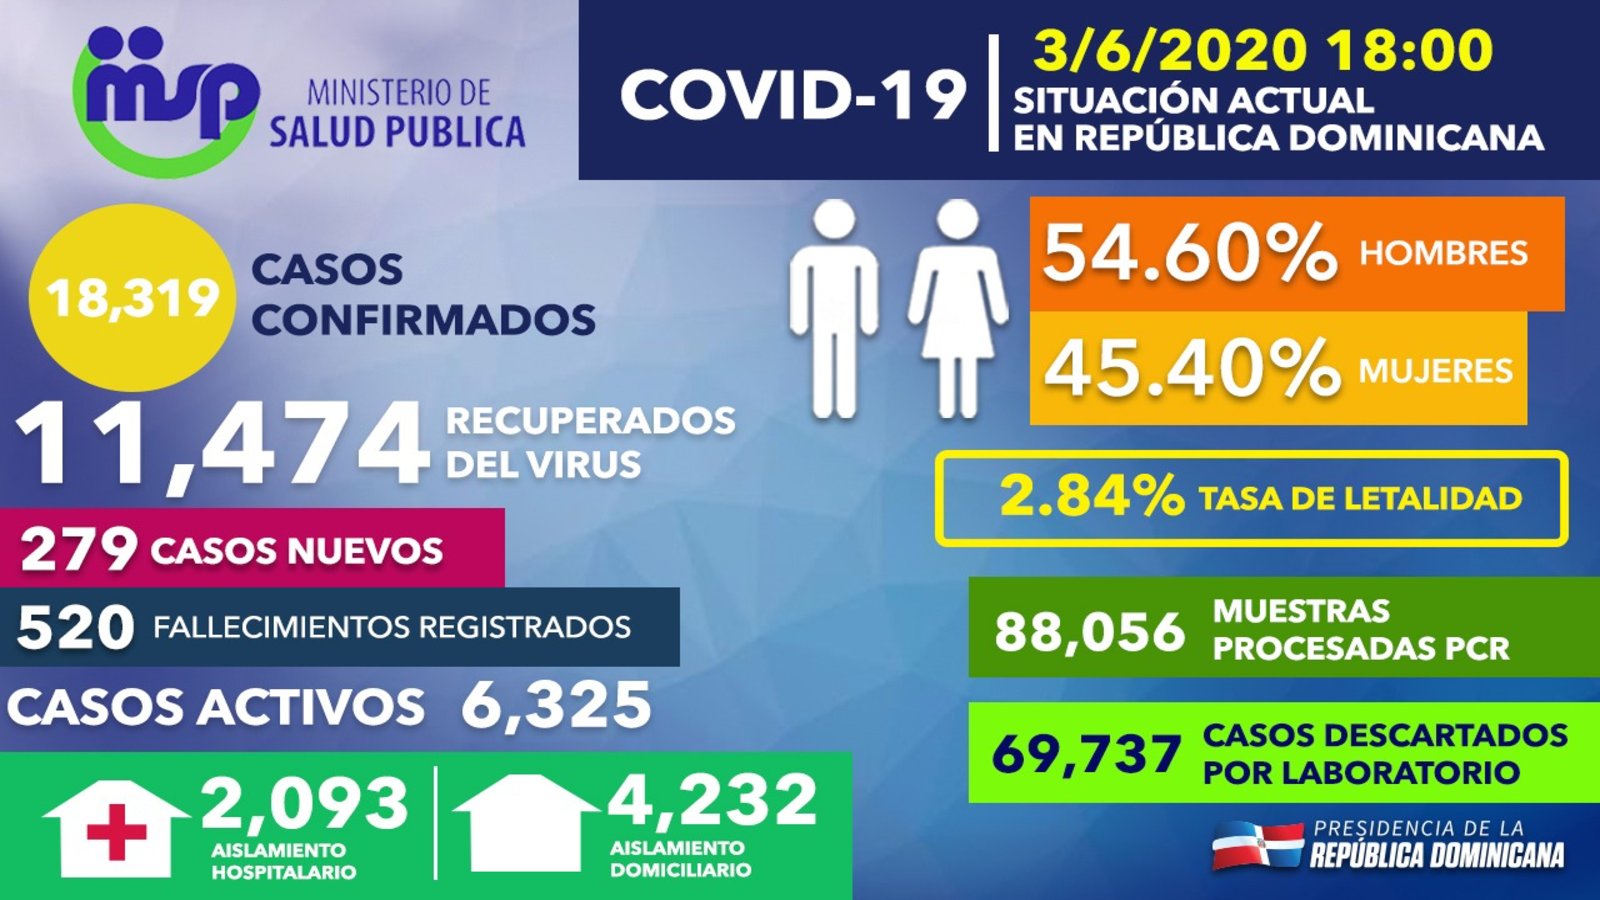 REPÚBLICA DOMINICANA: Recuperados de COVID-19 ascienden a 11,474; tasa de letalidad se reduce a 2.84%